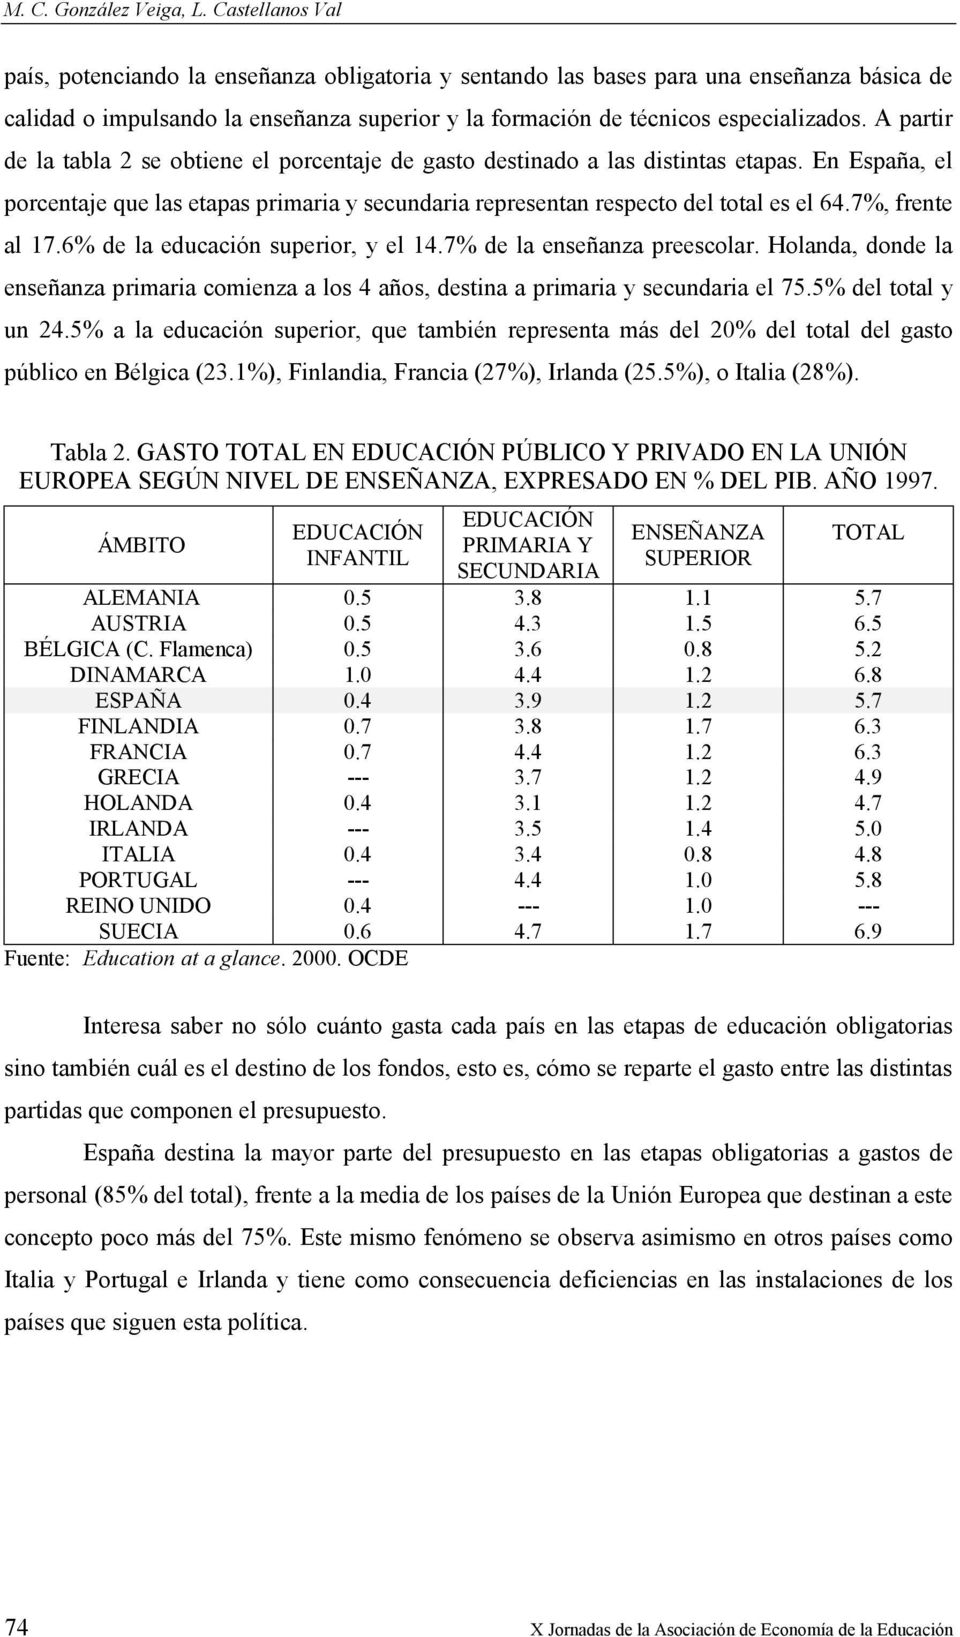 A partir de la tabla 2 se obtiene el porcentaje de gasto destinado a las distintas etapas. En España, el porcentaje que las etapas primaria y secundaria representan respecto del total es el 64.